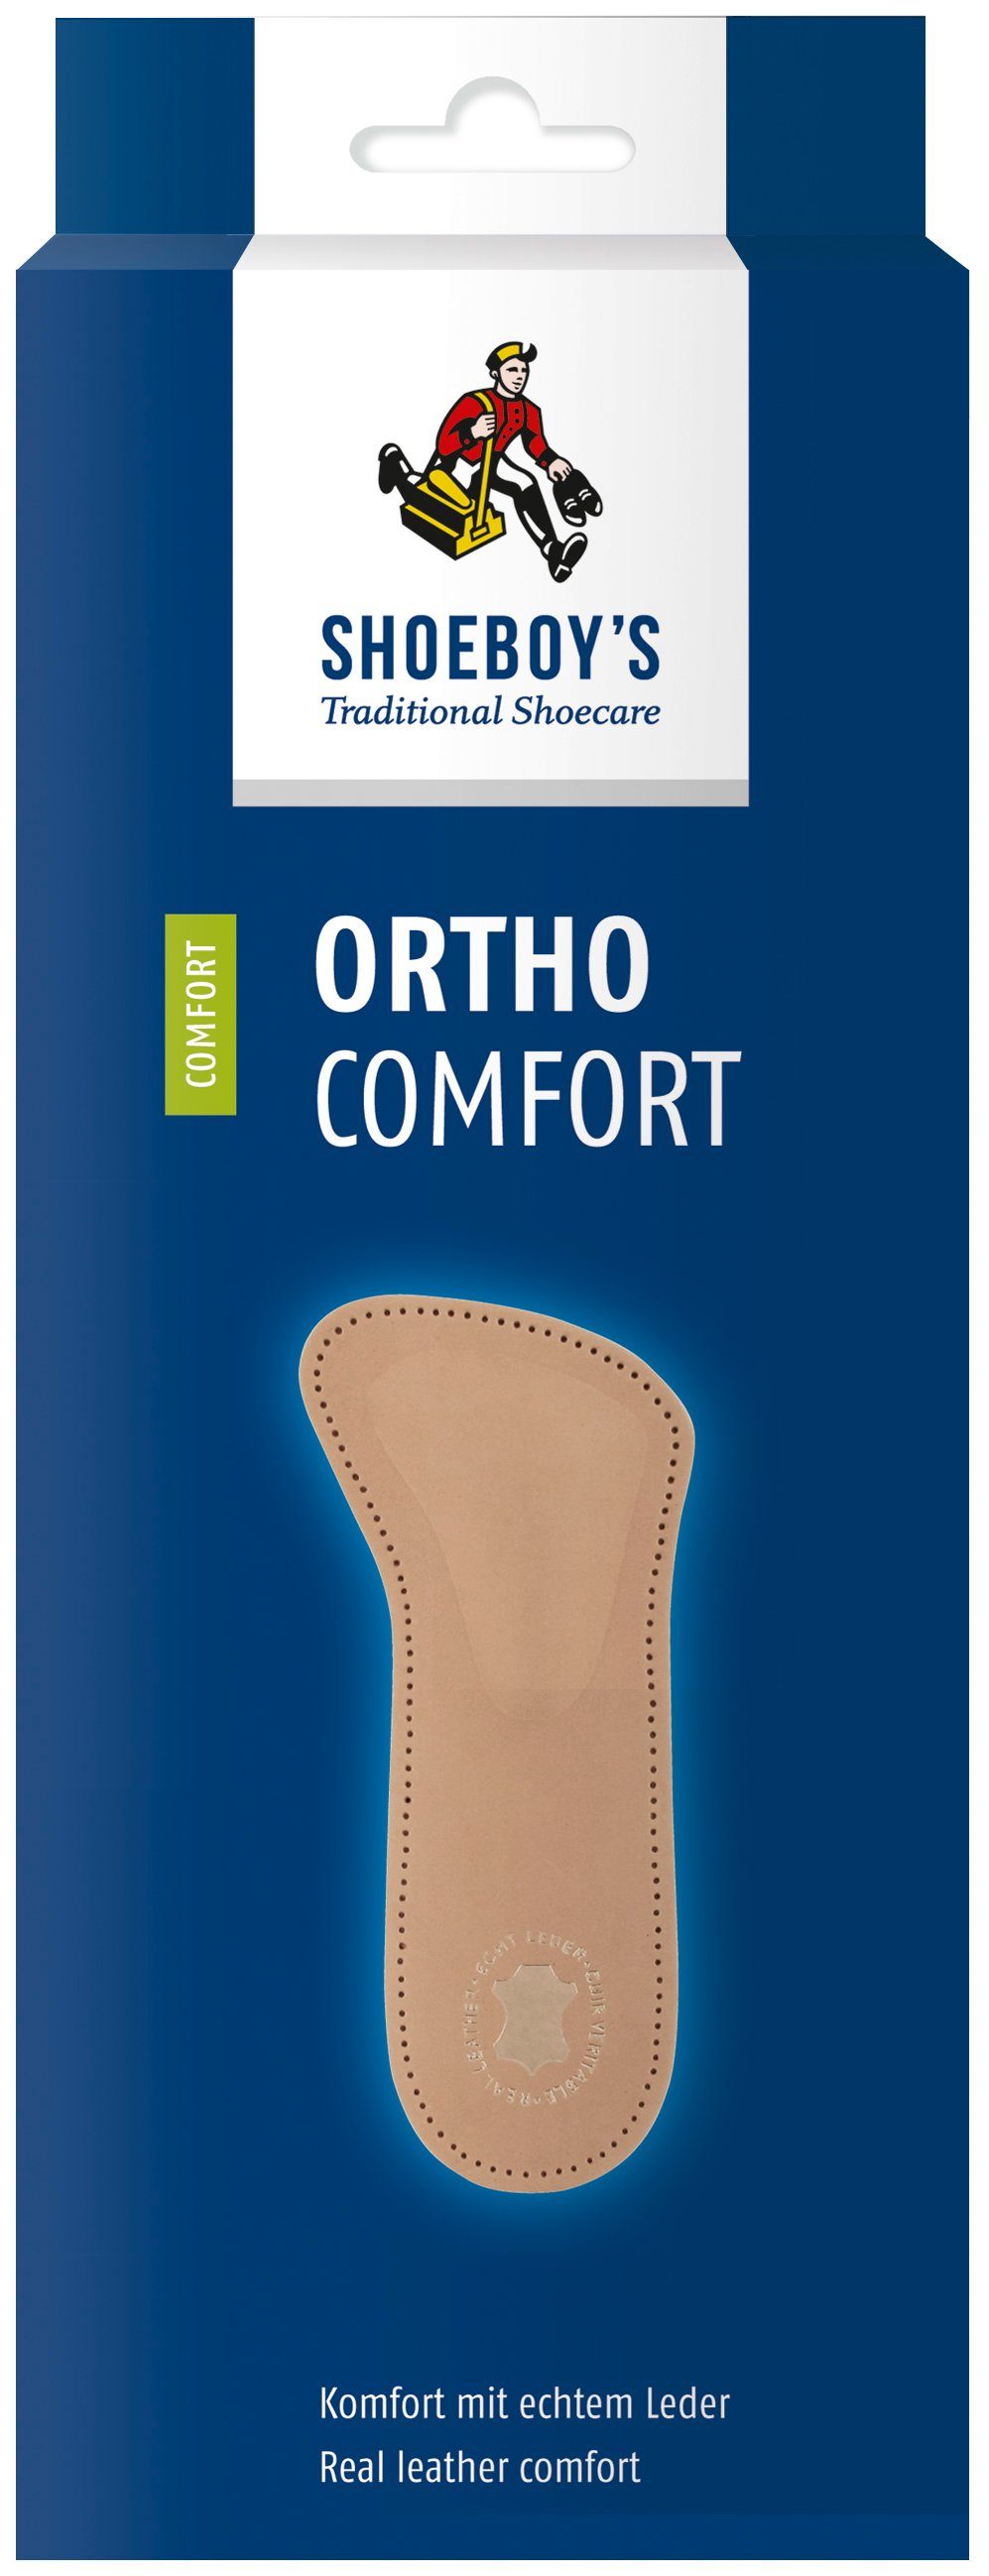 Shoeboys Spreizfußpolster Ortho Comfort - optimale bei Ballenbrennen Spreizfußproblemen und die Fußstütze